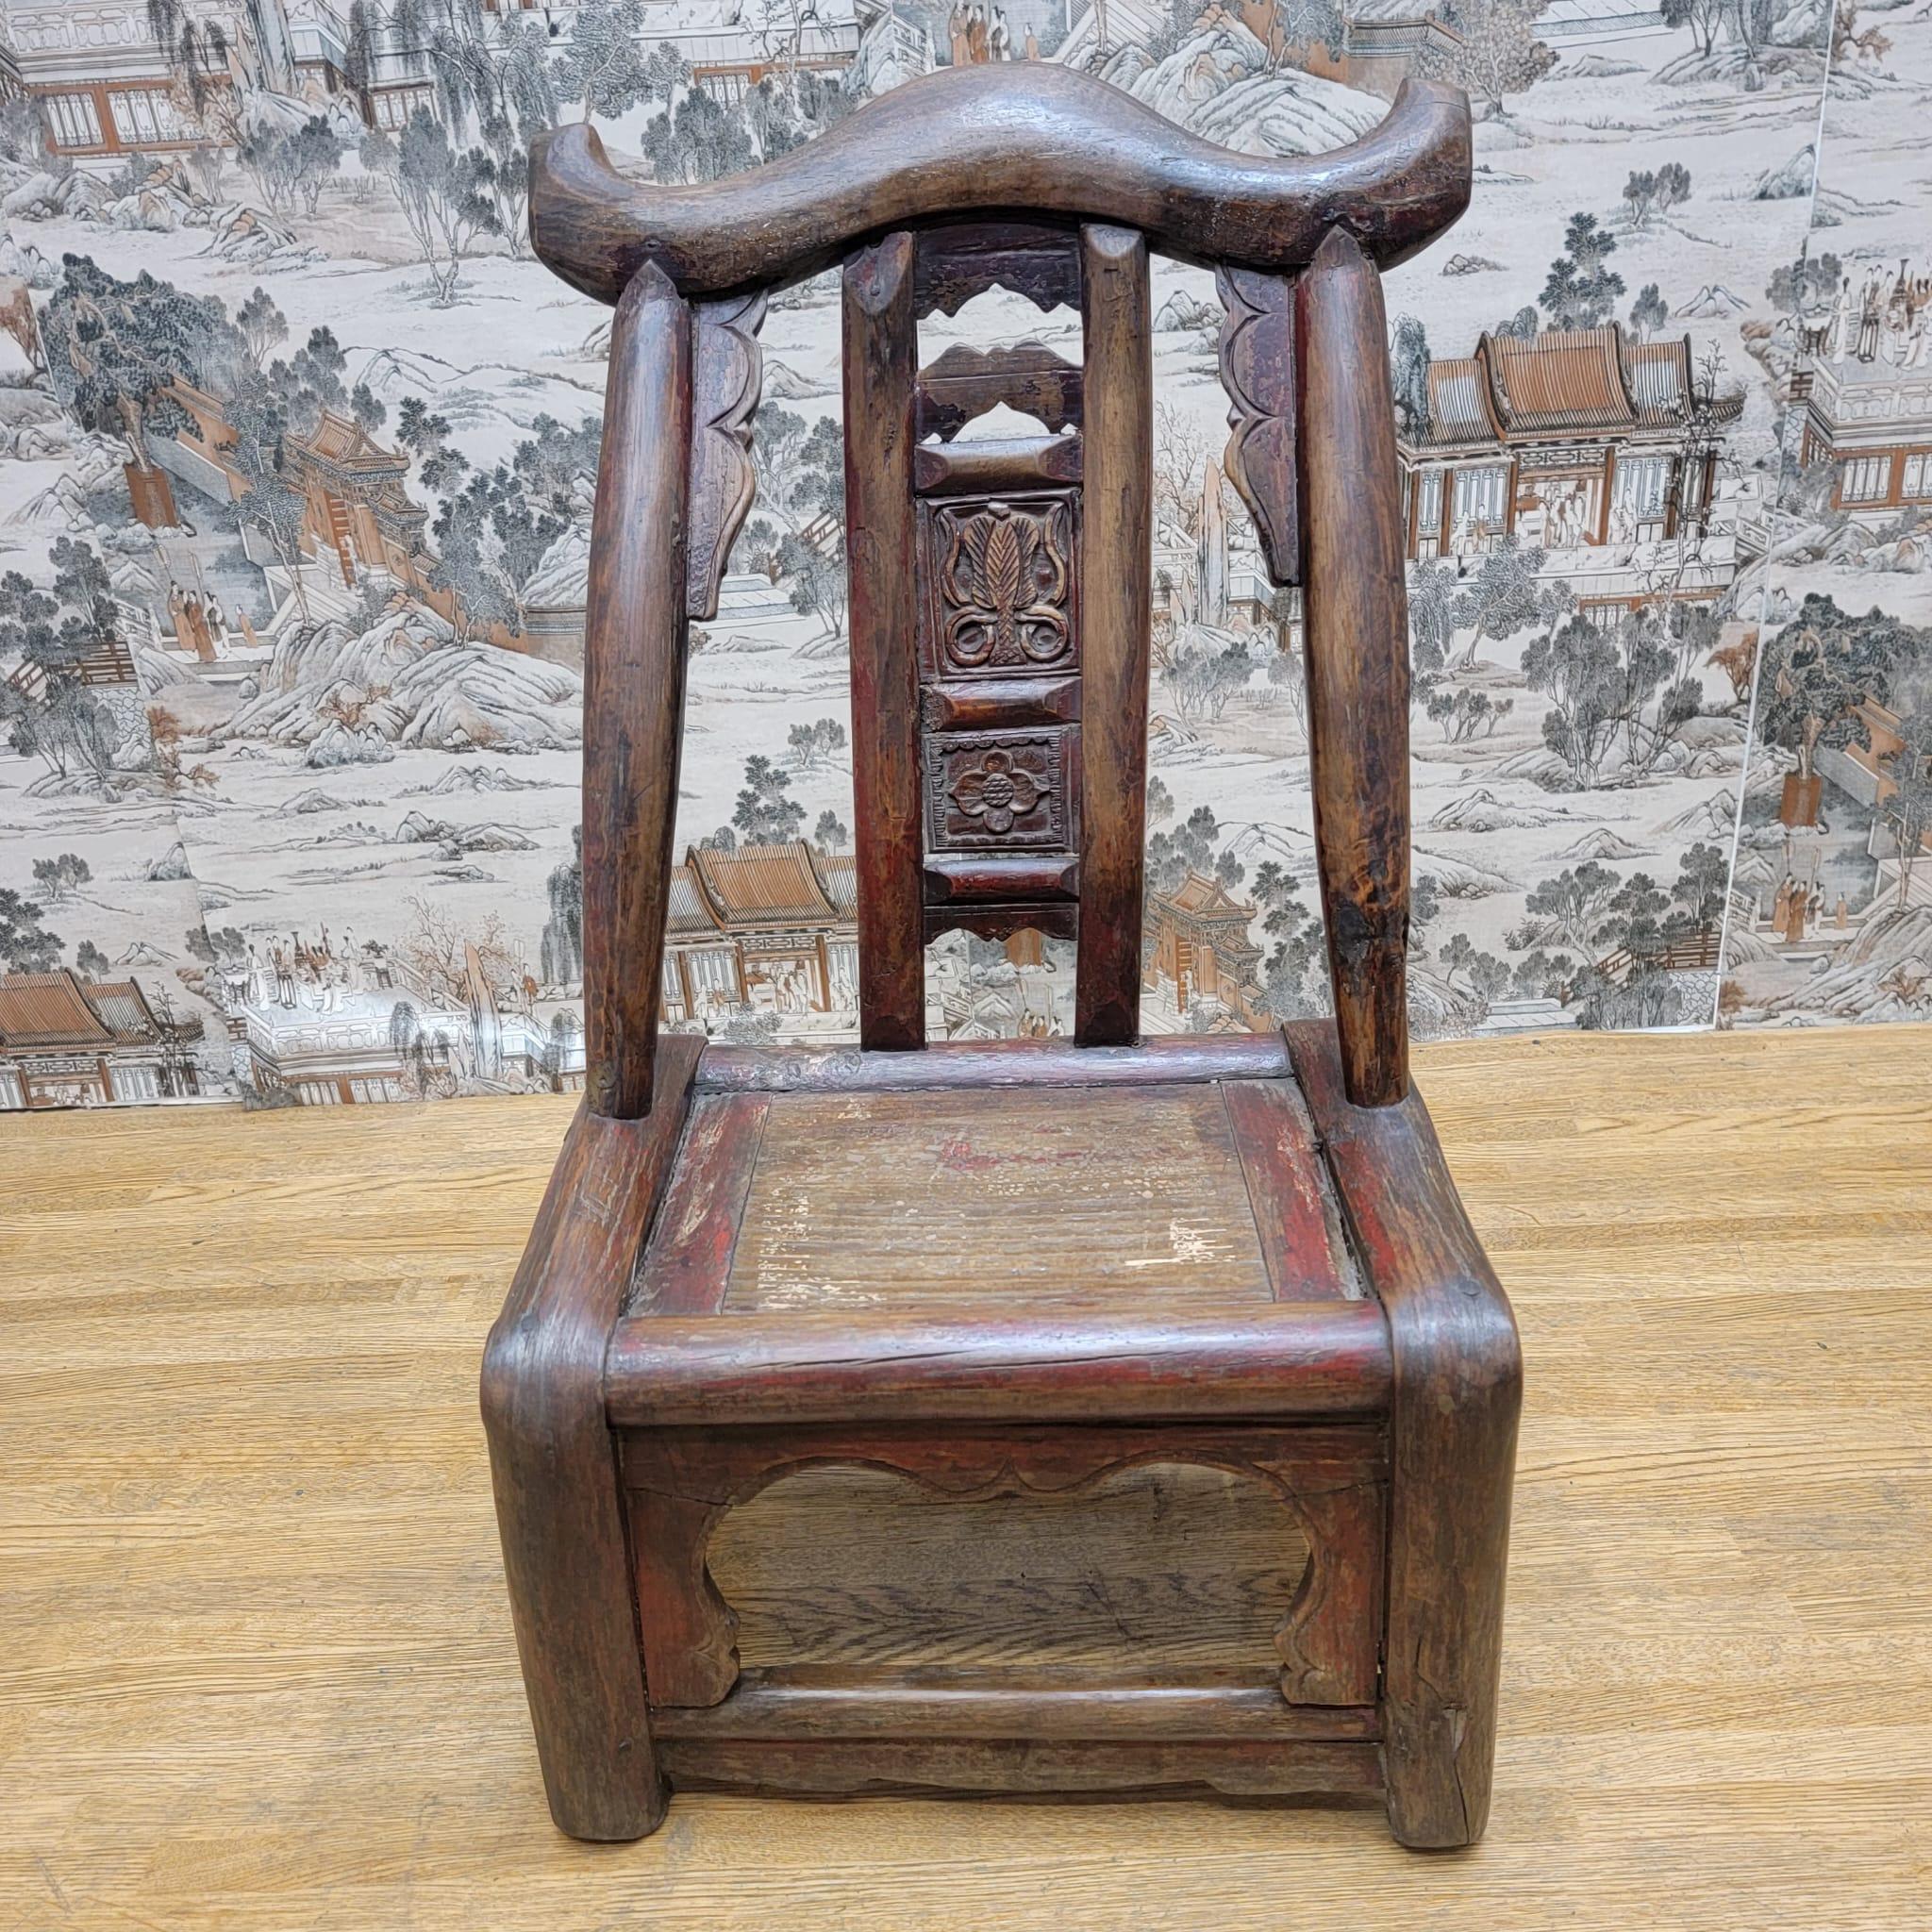 Antique chaise d'enfant en orme sculpté à la main de la province du Shanxi.

Cette chaise d'enfant en orme de la province de Shanxi en Chine est sculptée à la main et constitue une pièce extrêmement rare. Patine entièrement naturelle. 

Circa